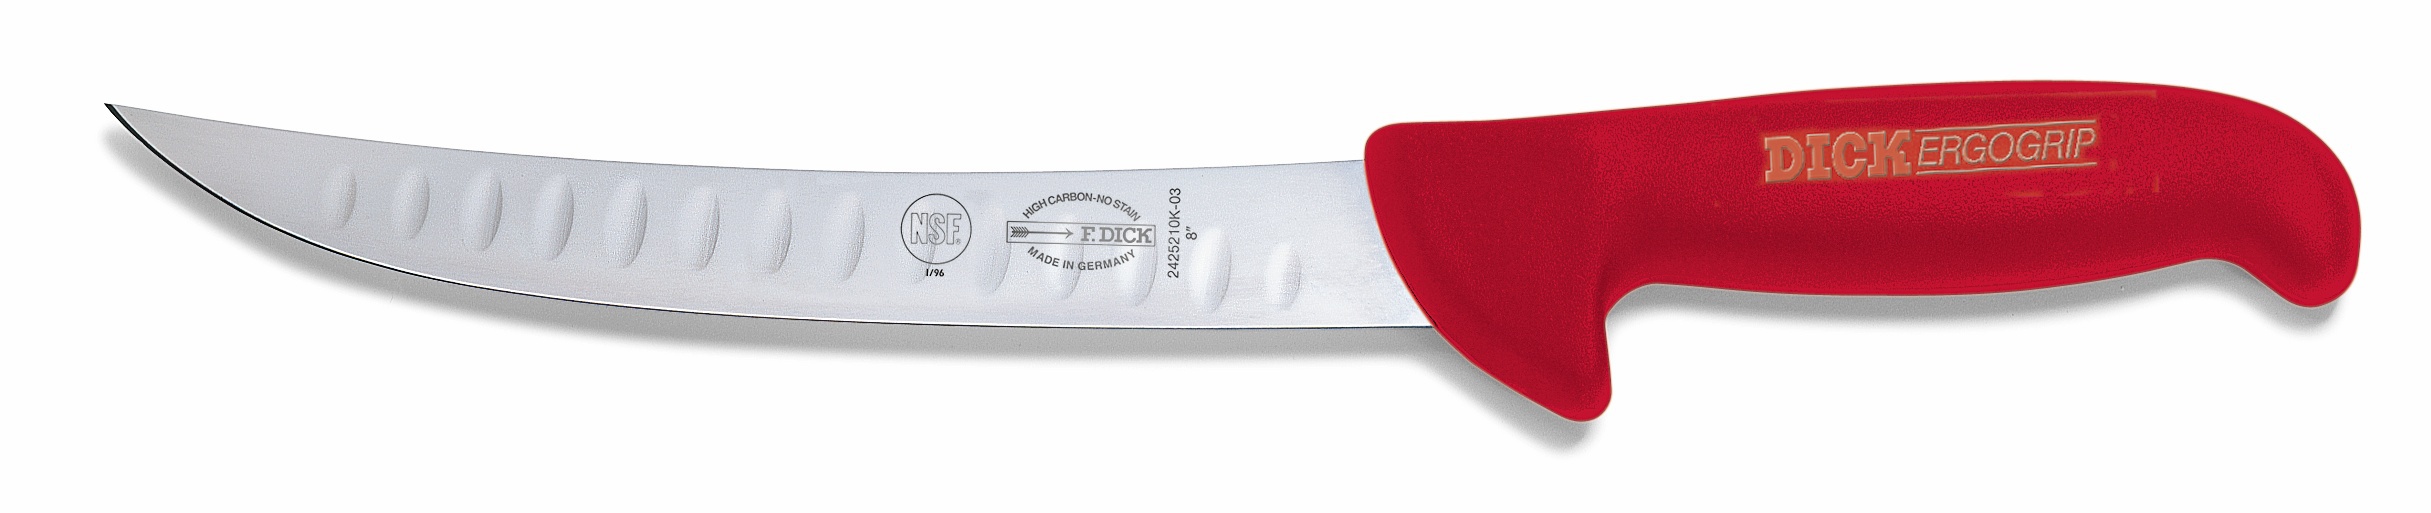 Porcovací nůž se speciálním výbrusem, červený v délce 21 cm